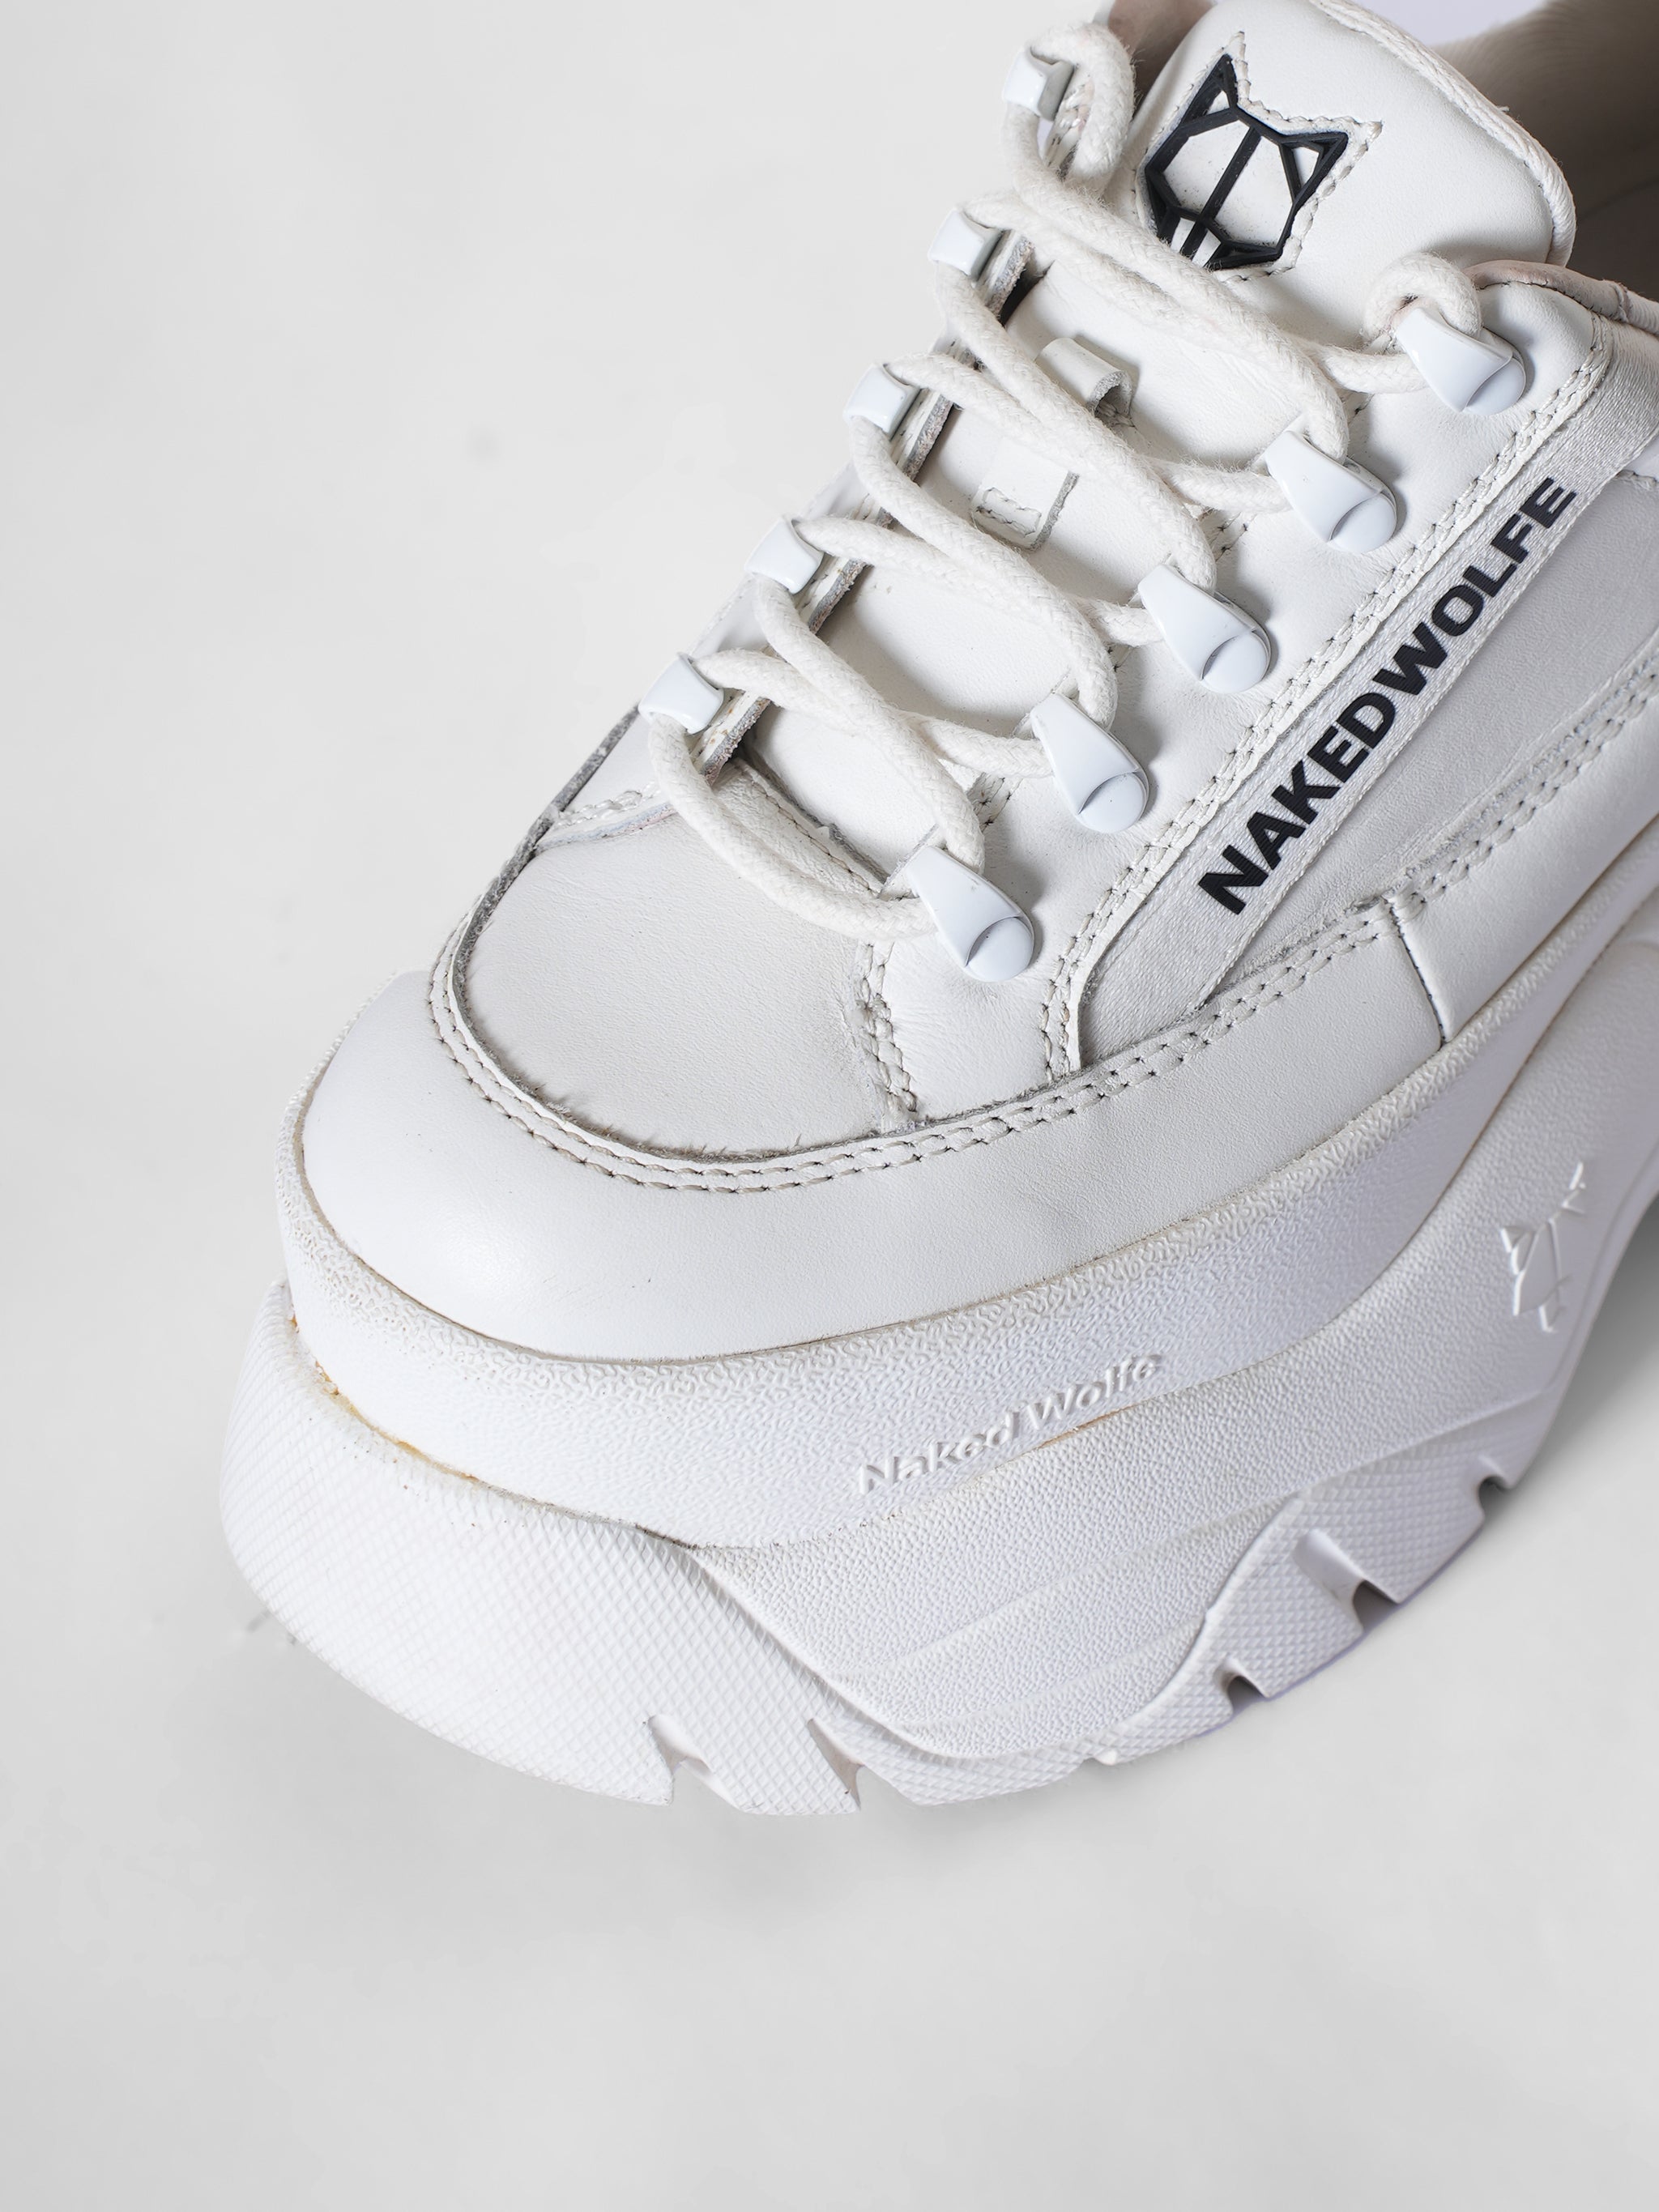 Naked Wolfe Sprinta White Leather Mega Platform Sneakers